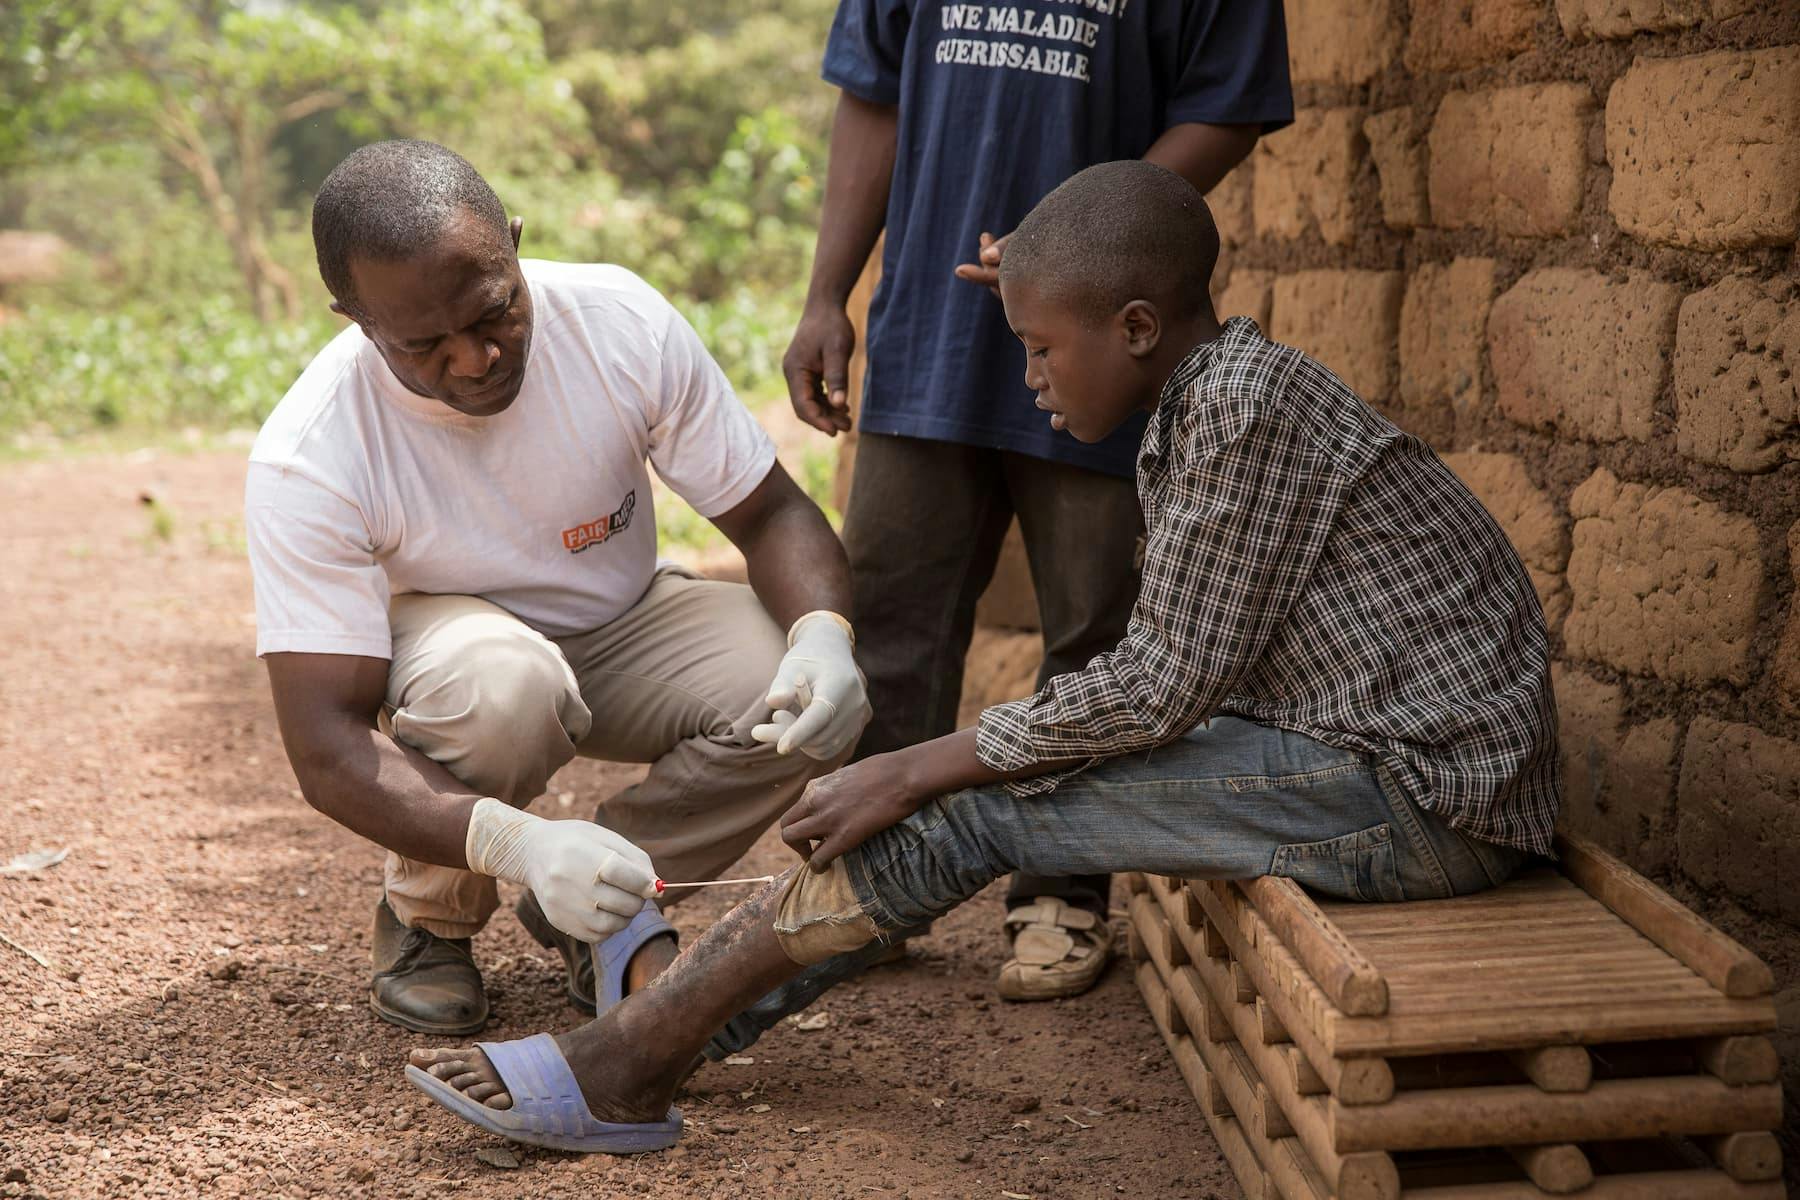 Ein FAIRMED-Mitarbeiter in Kamerun behandelt eine Buruli-Wunde am Bein eines Jugendlichen. Der Jugendliche sitzt vor einer Hütte in einem abgelegenen Dorf.